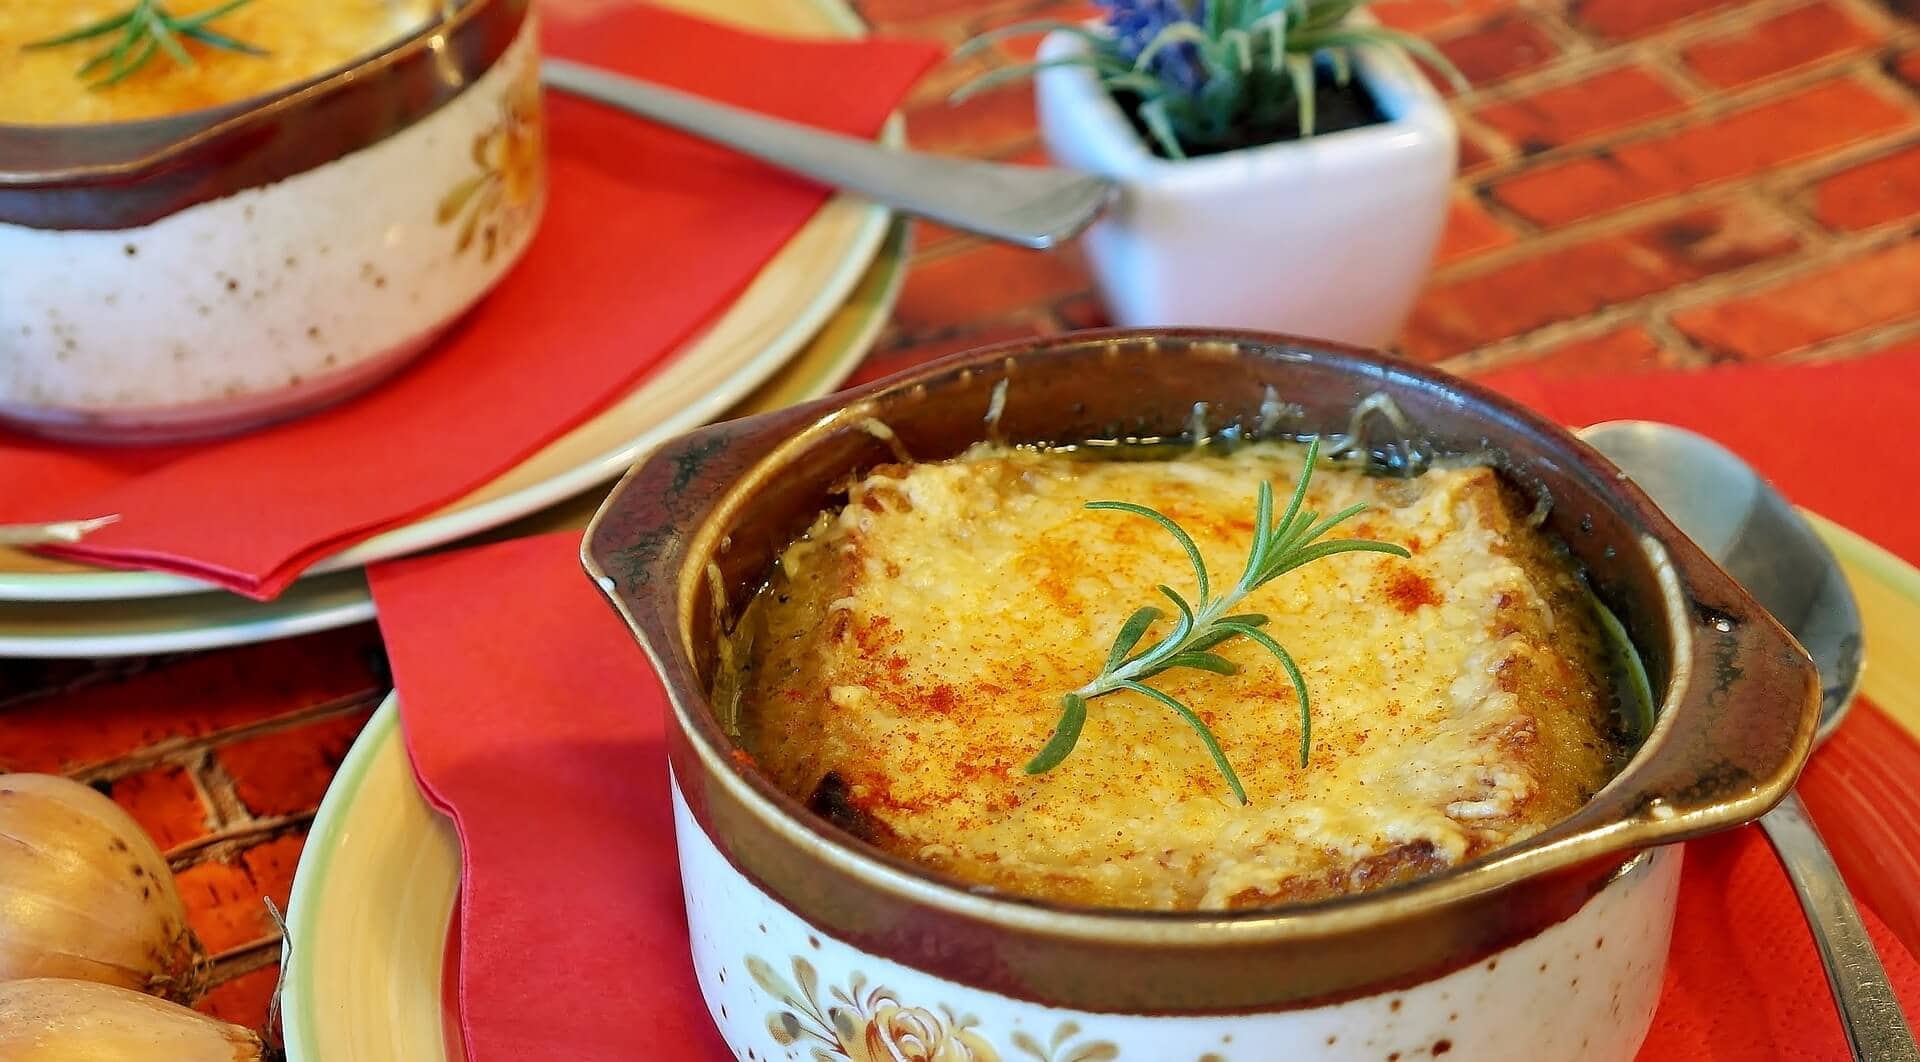 Sopa de cebolla y la gastronomía francesa